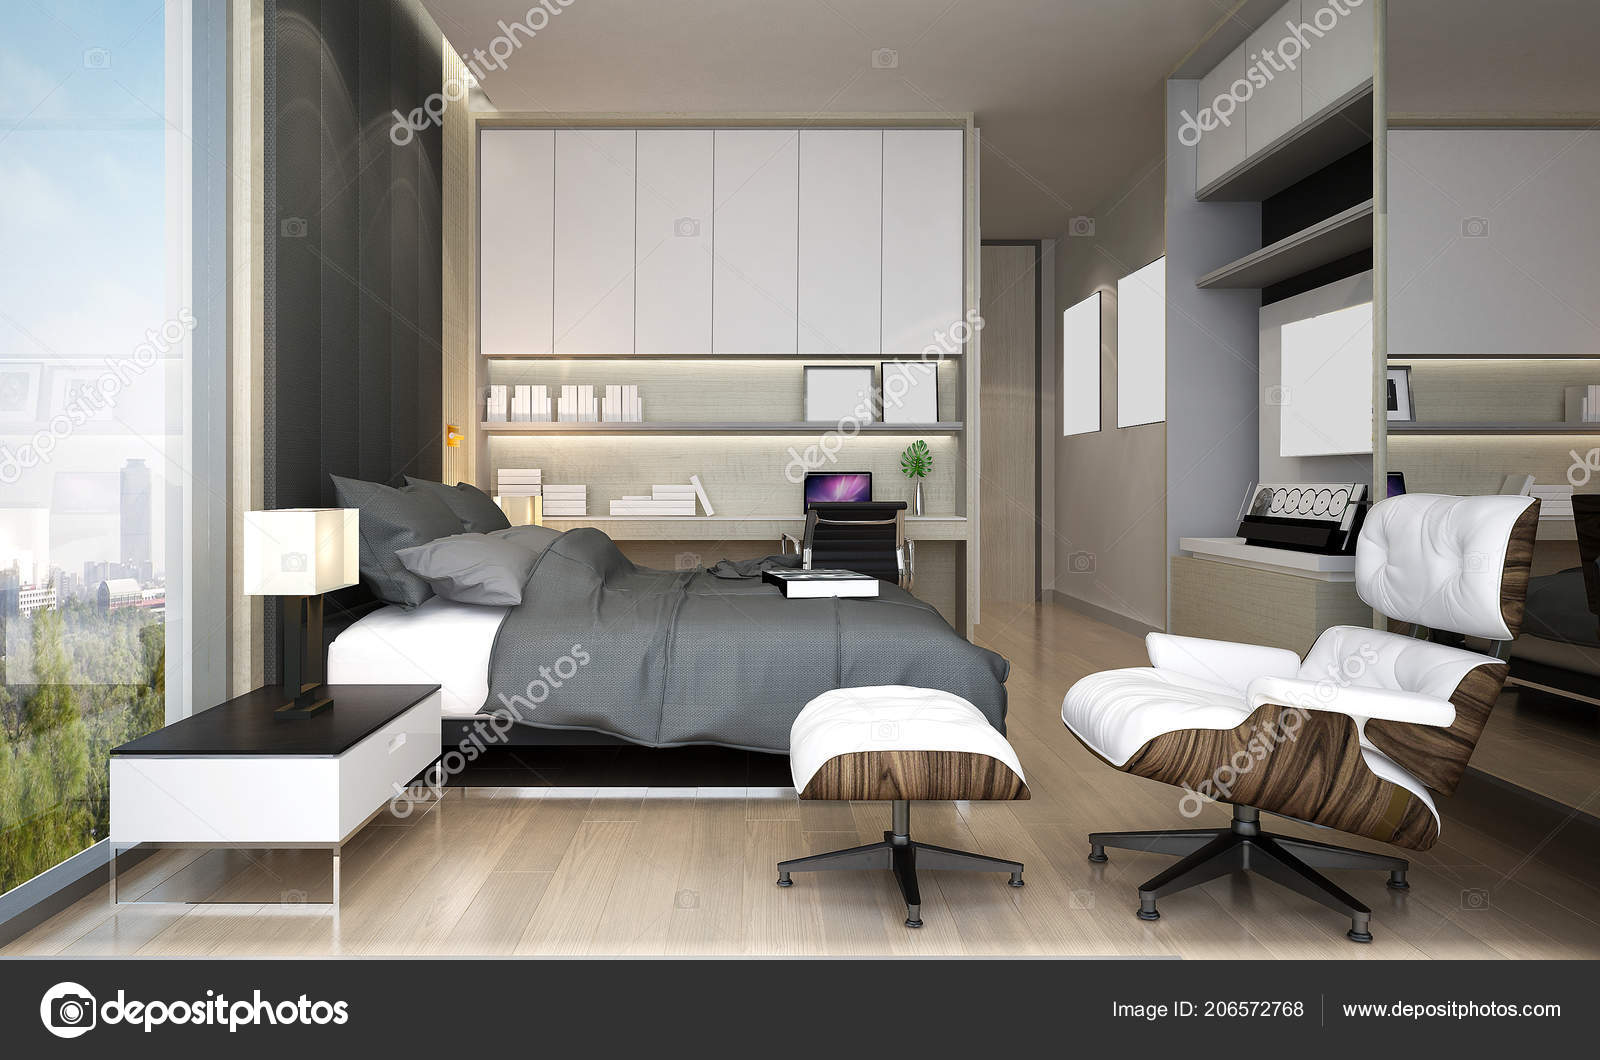 Modern Yatak Odası Tasarımı Stok fotoğrafçılık ©Teeraphan Telifsiz